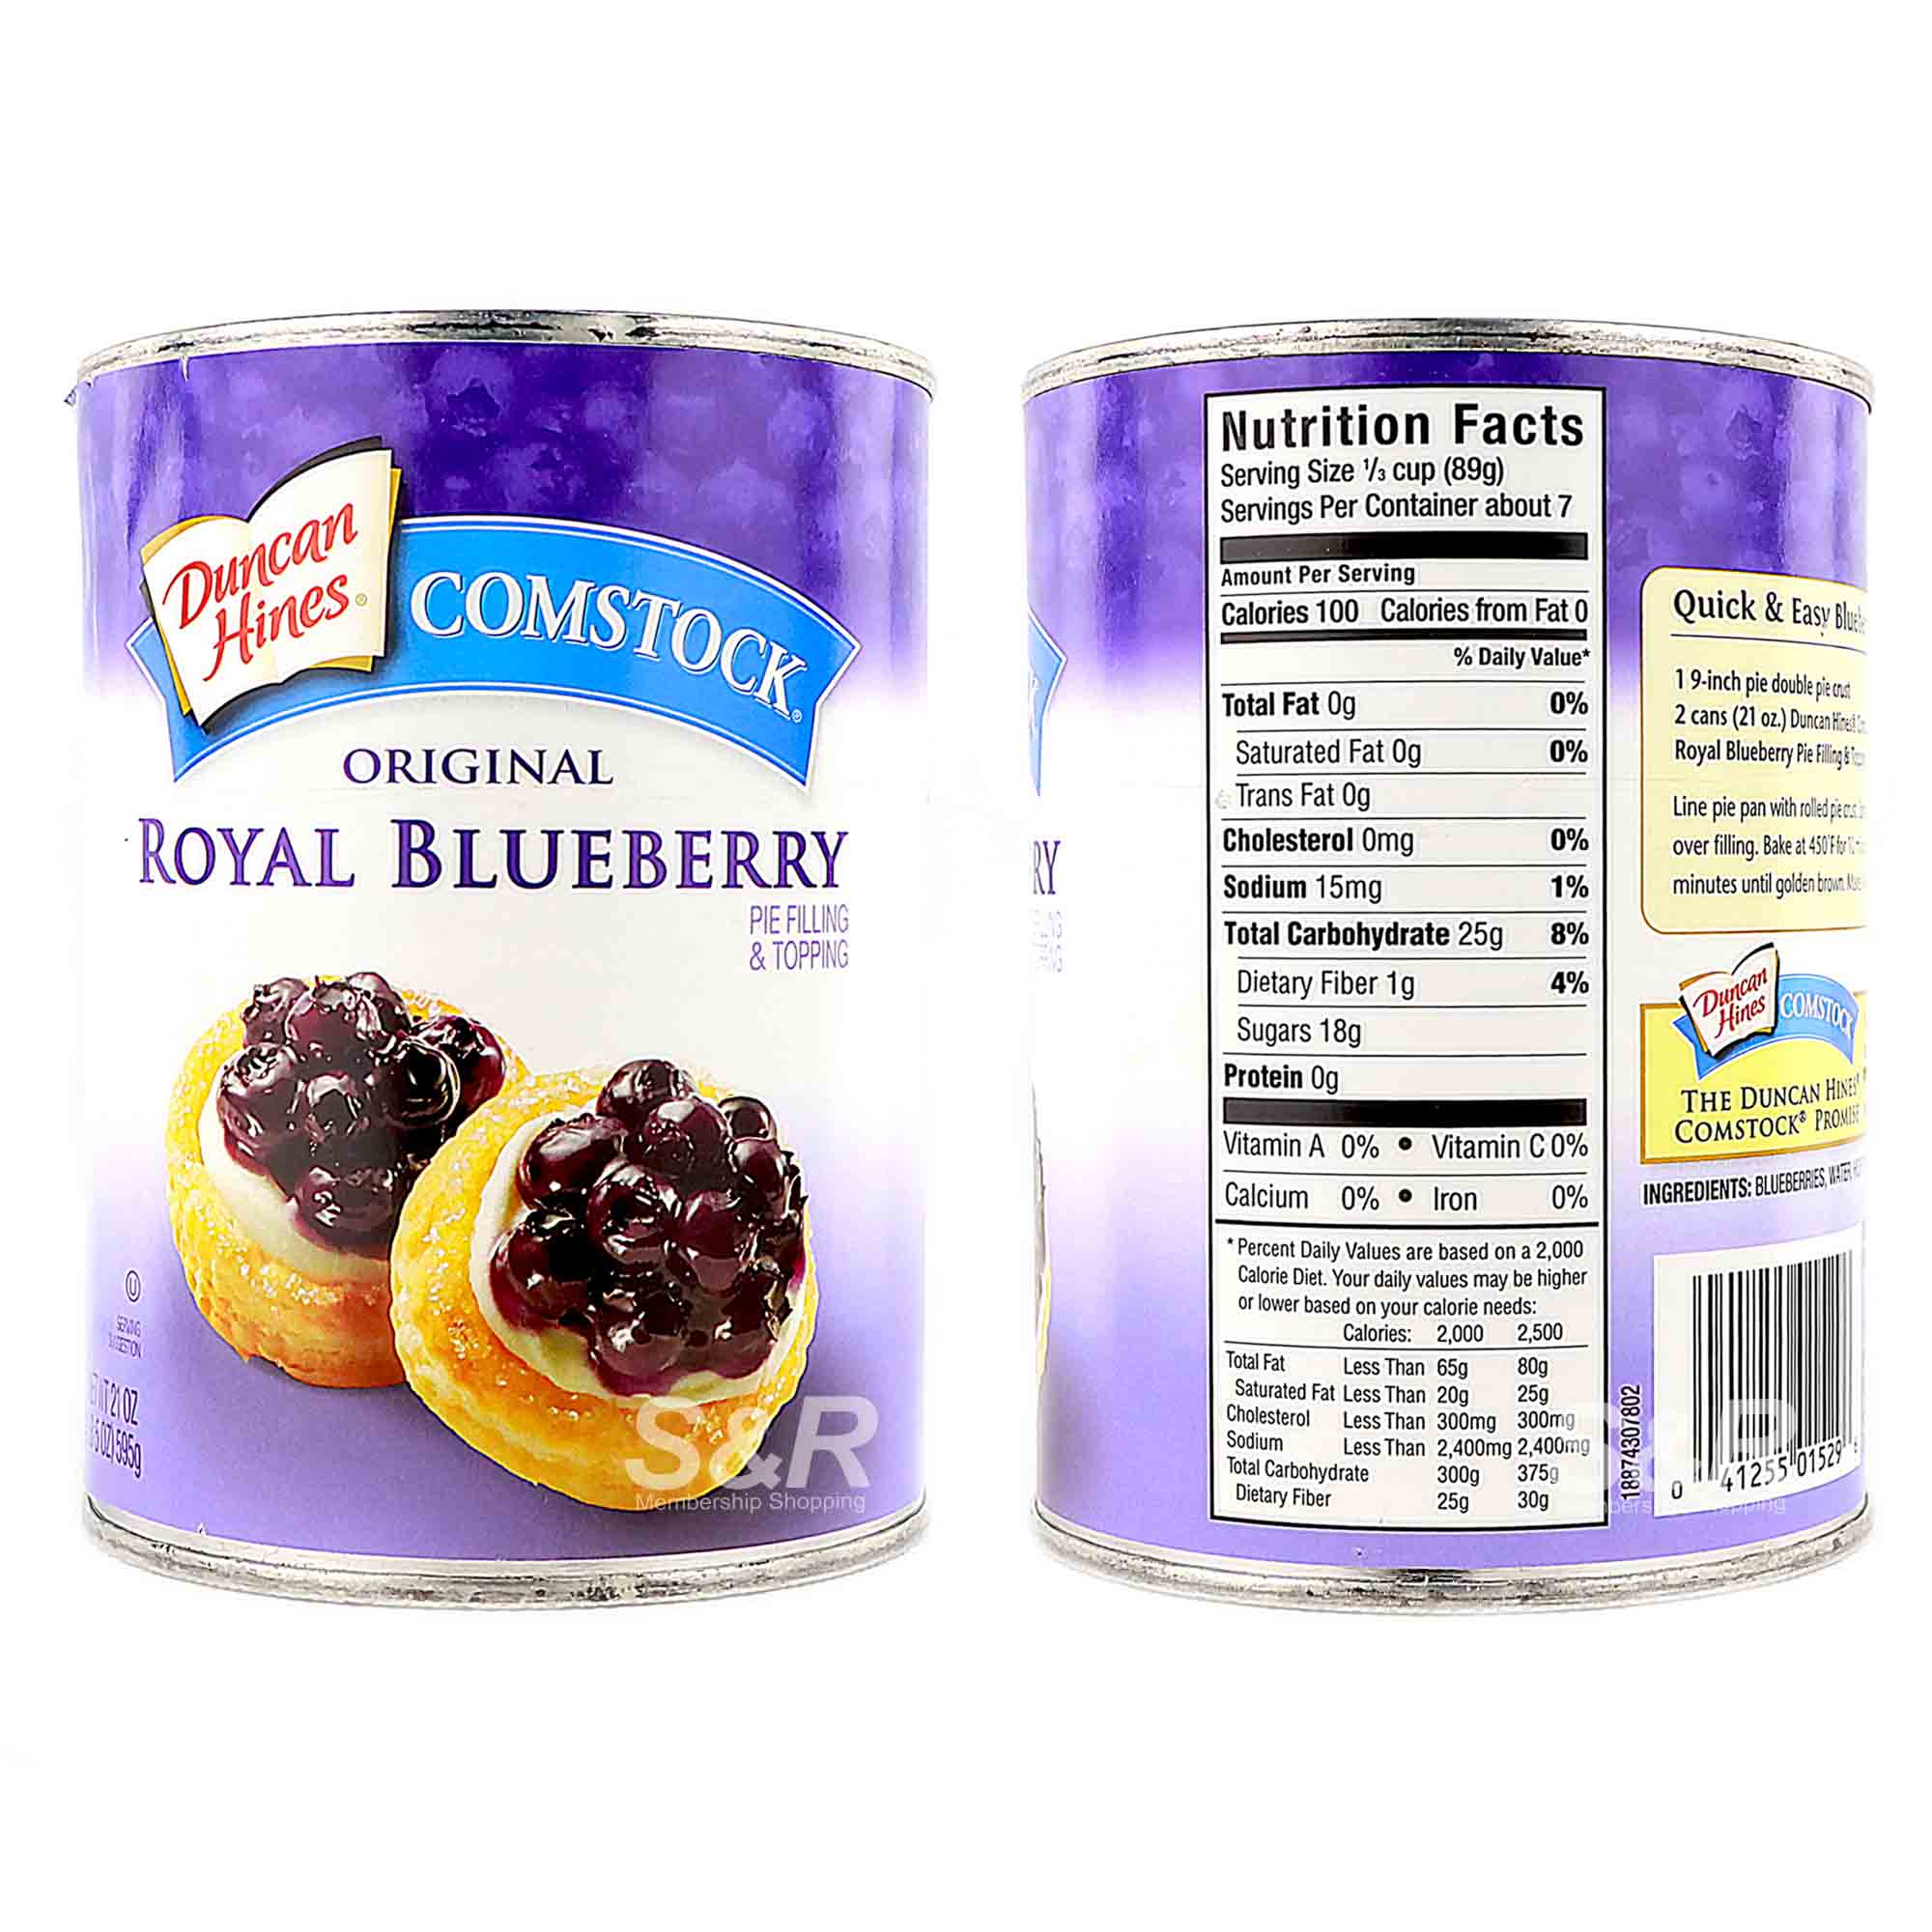 Original Royal Blueberry